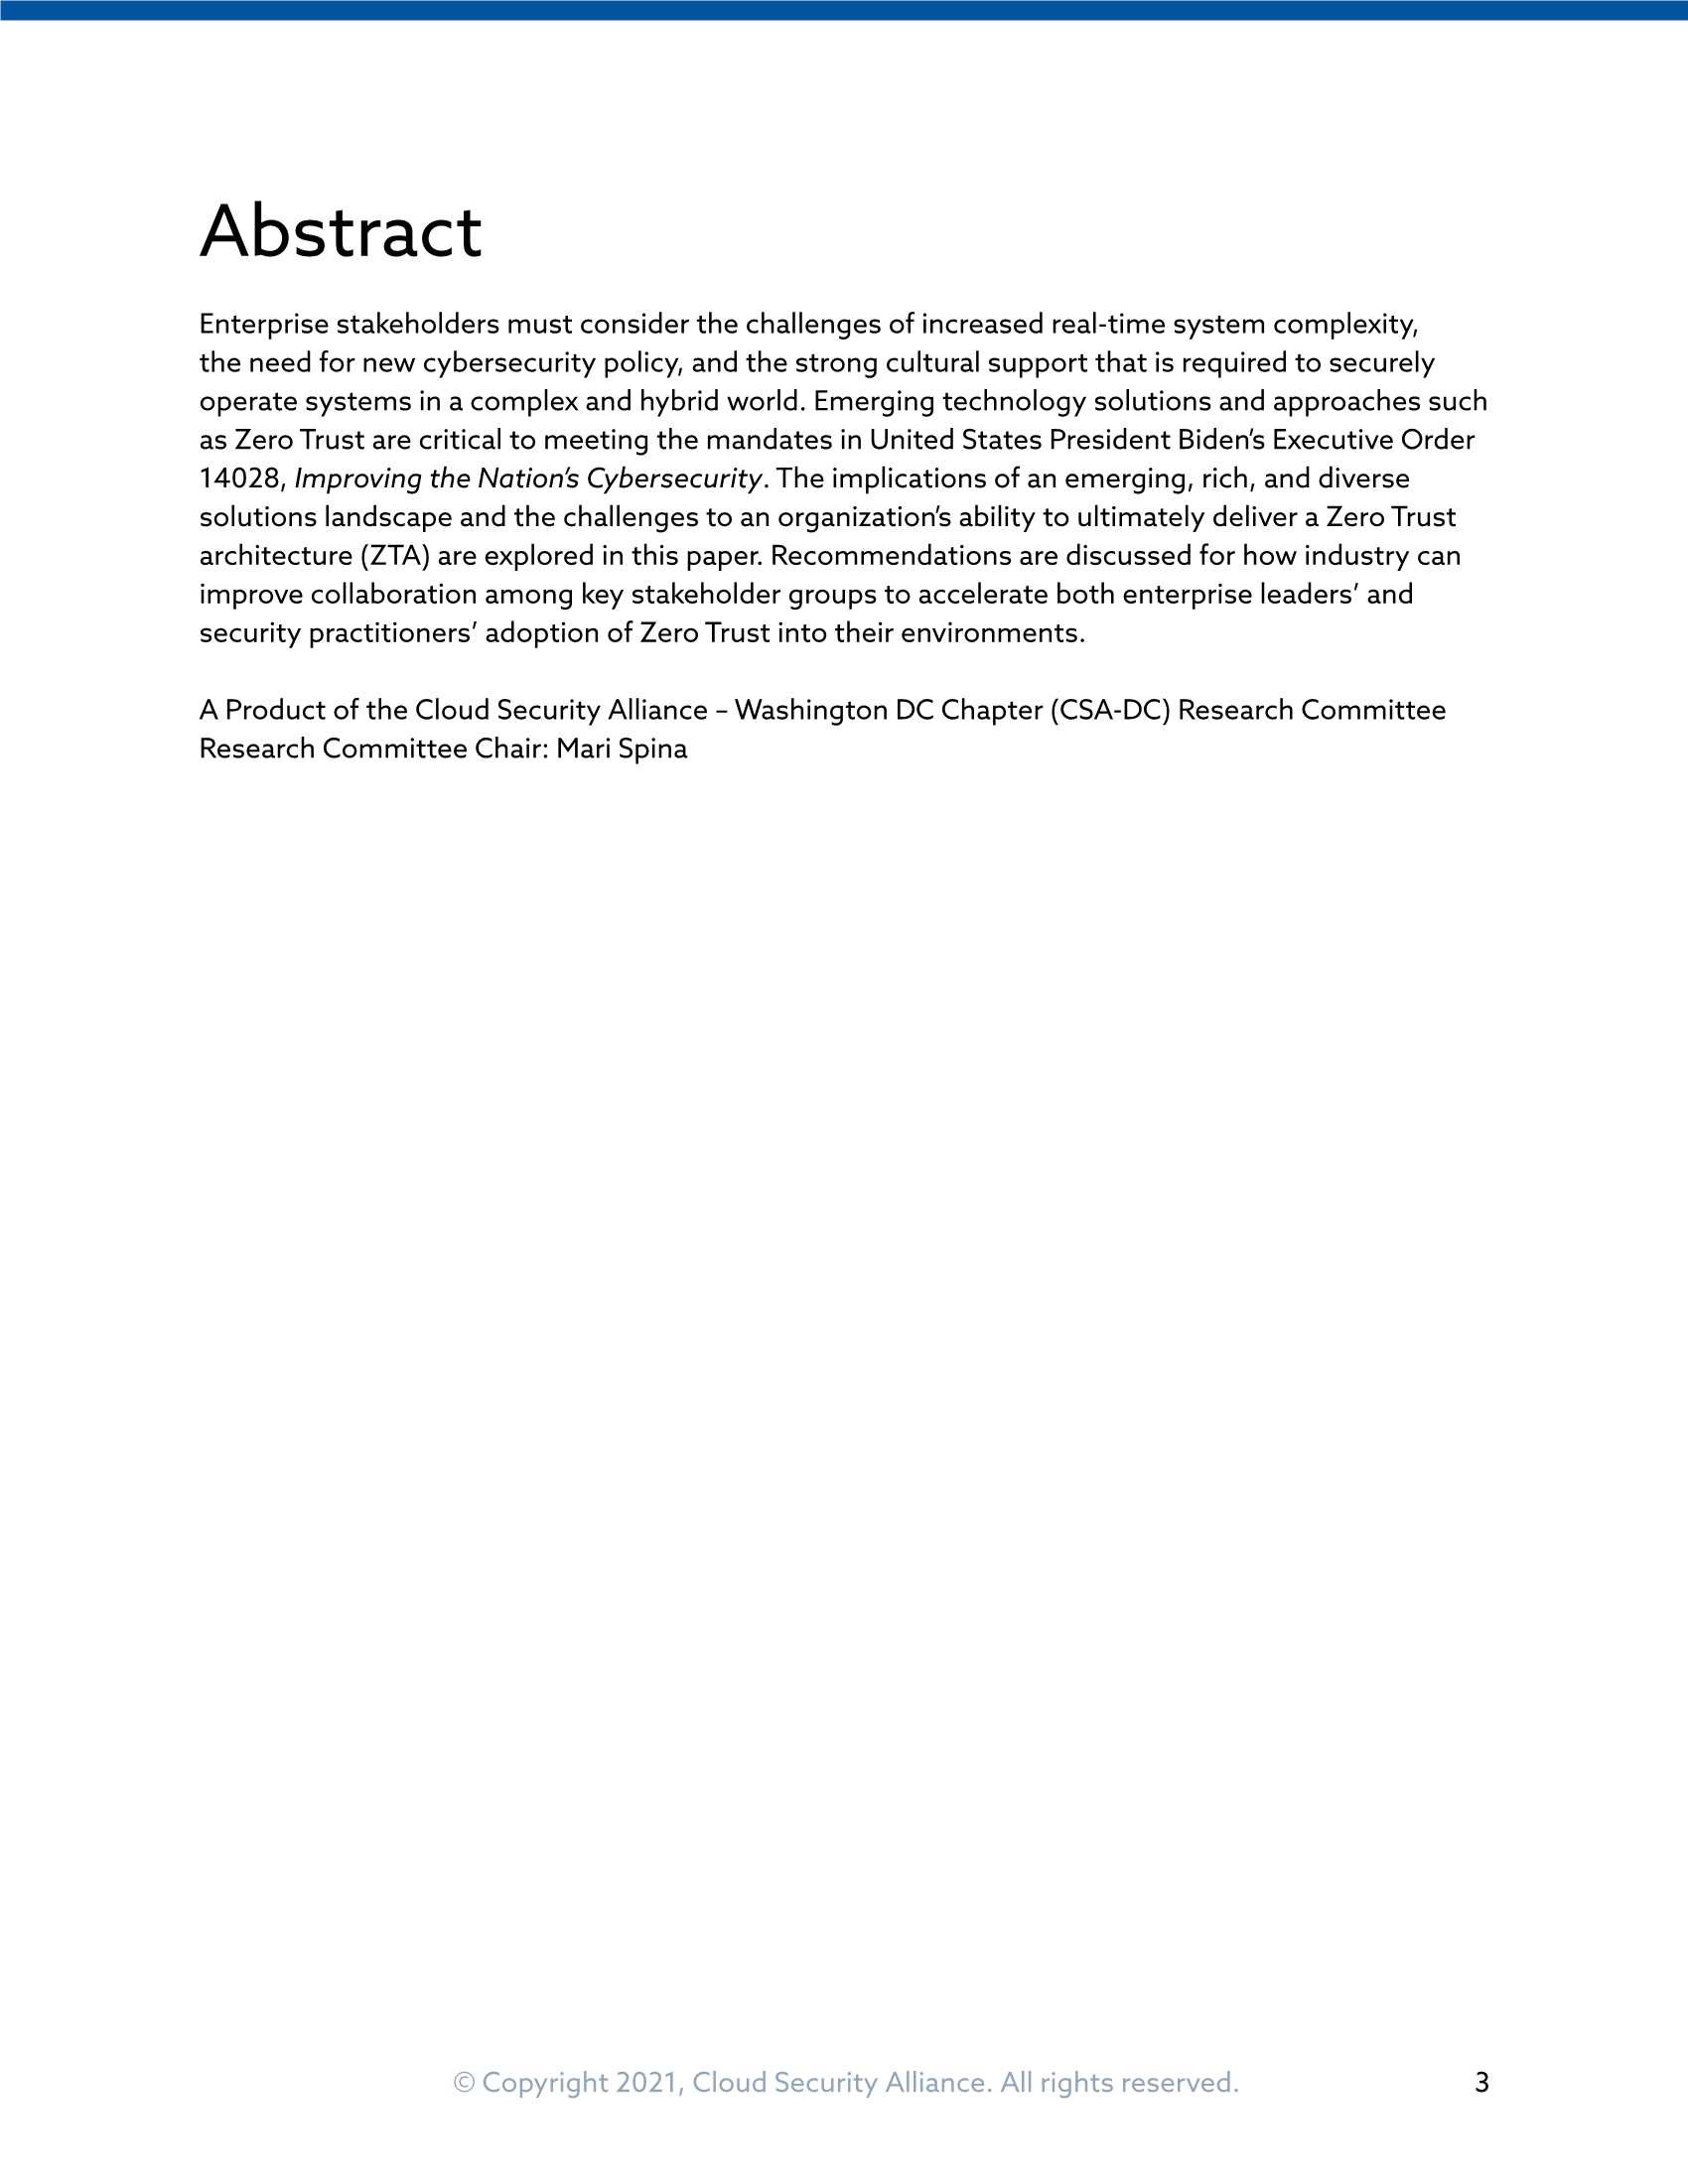 云安全联盟-走向零信任架构：面向复杂和混合世界的指导性方法（英）-2021.11-30页